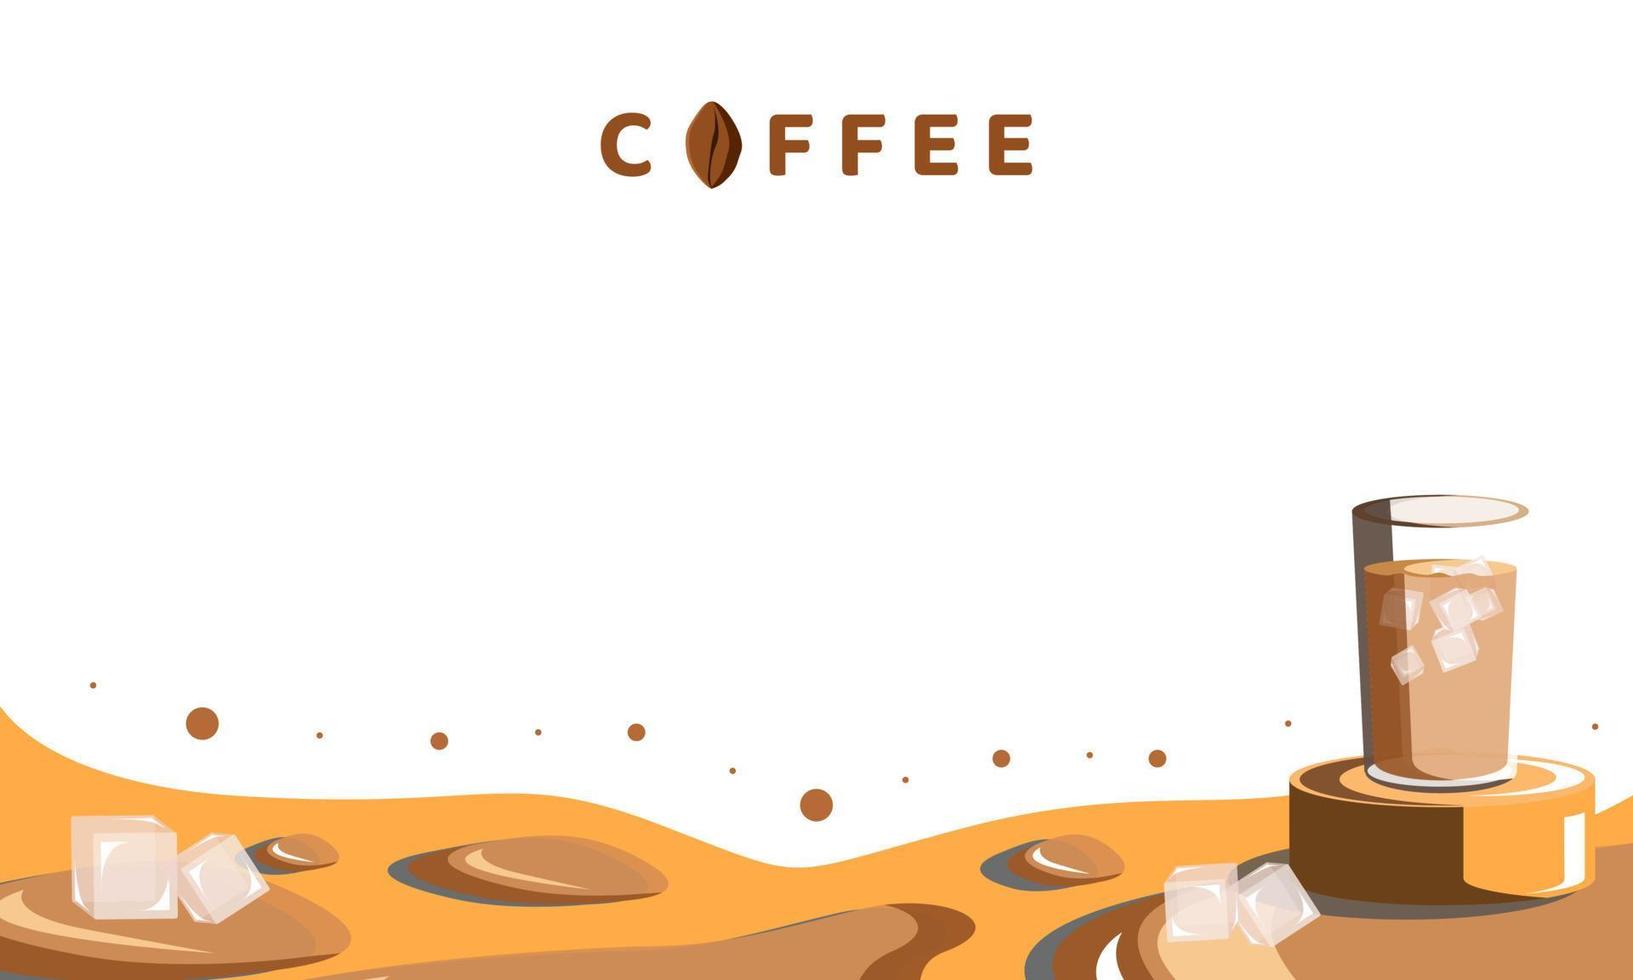 achtergrond drink koffie ontwerp vectorillustratie vector